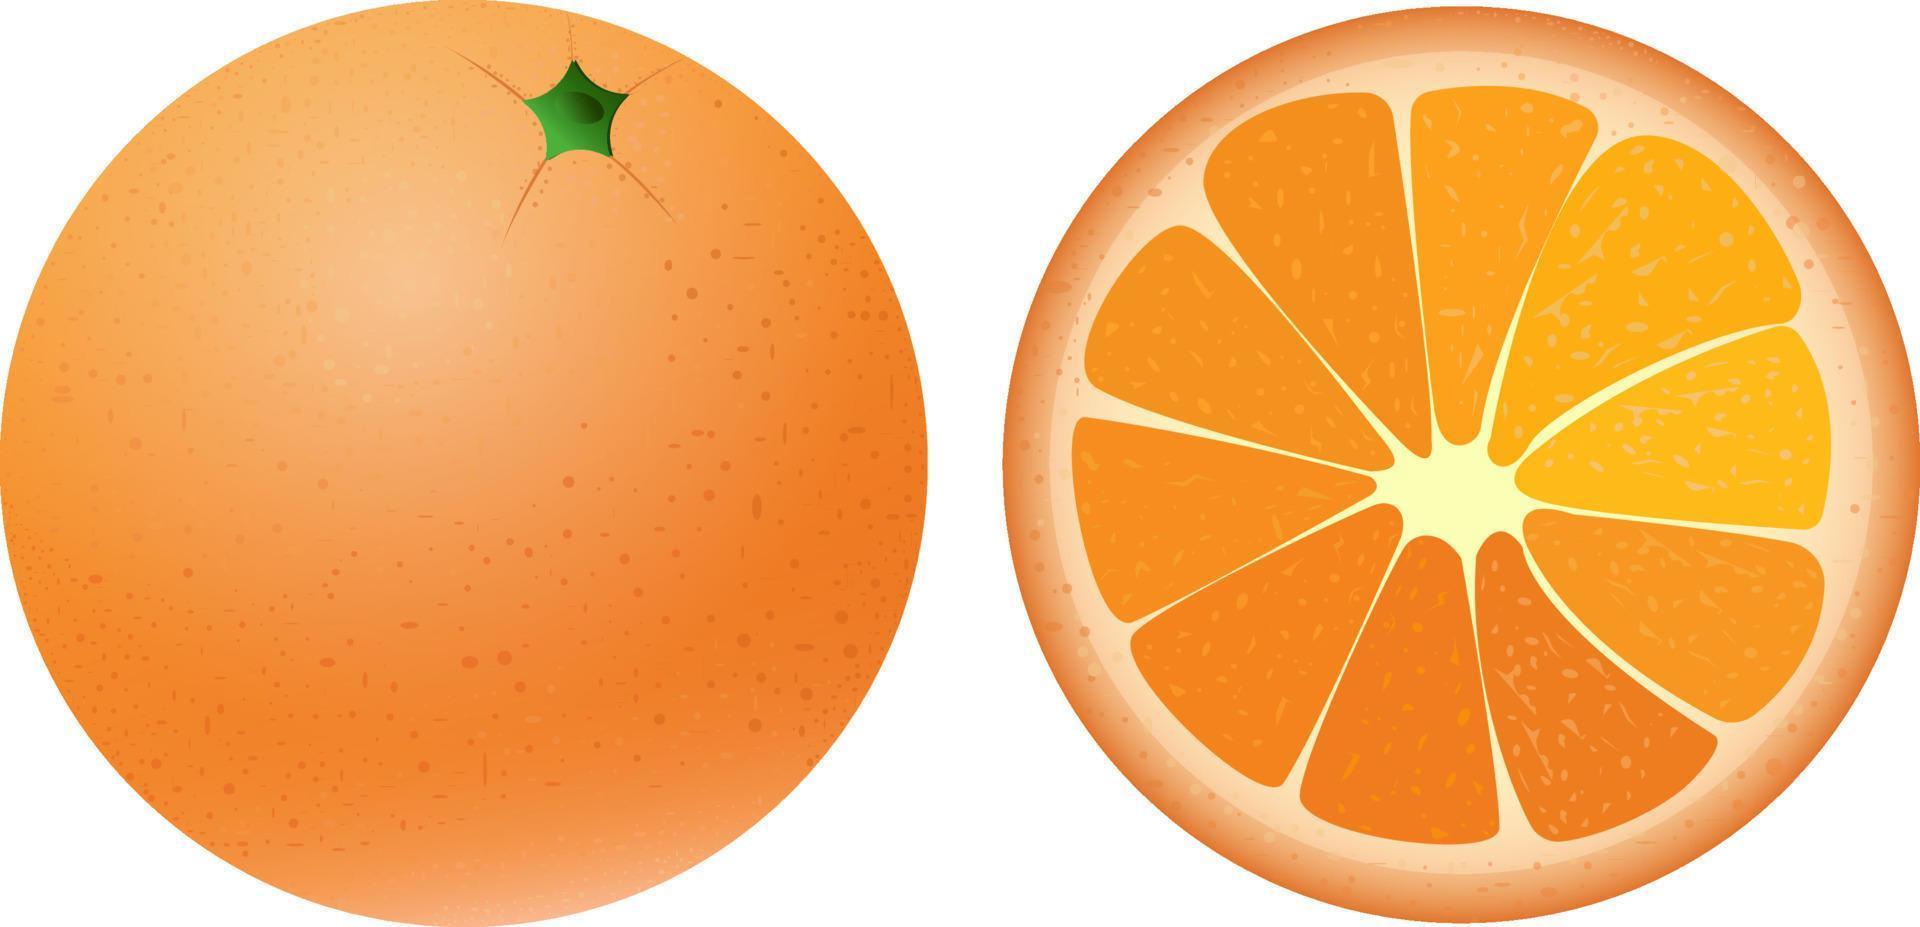 ljus saftig orange i de hela form och i de sektion. sommar citrus- frukt, för färsk juice. vektor illustration isolerat på en vit bakgrund.